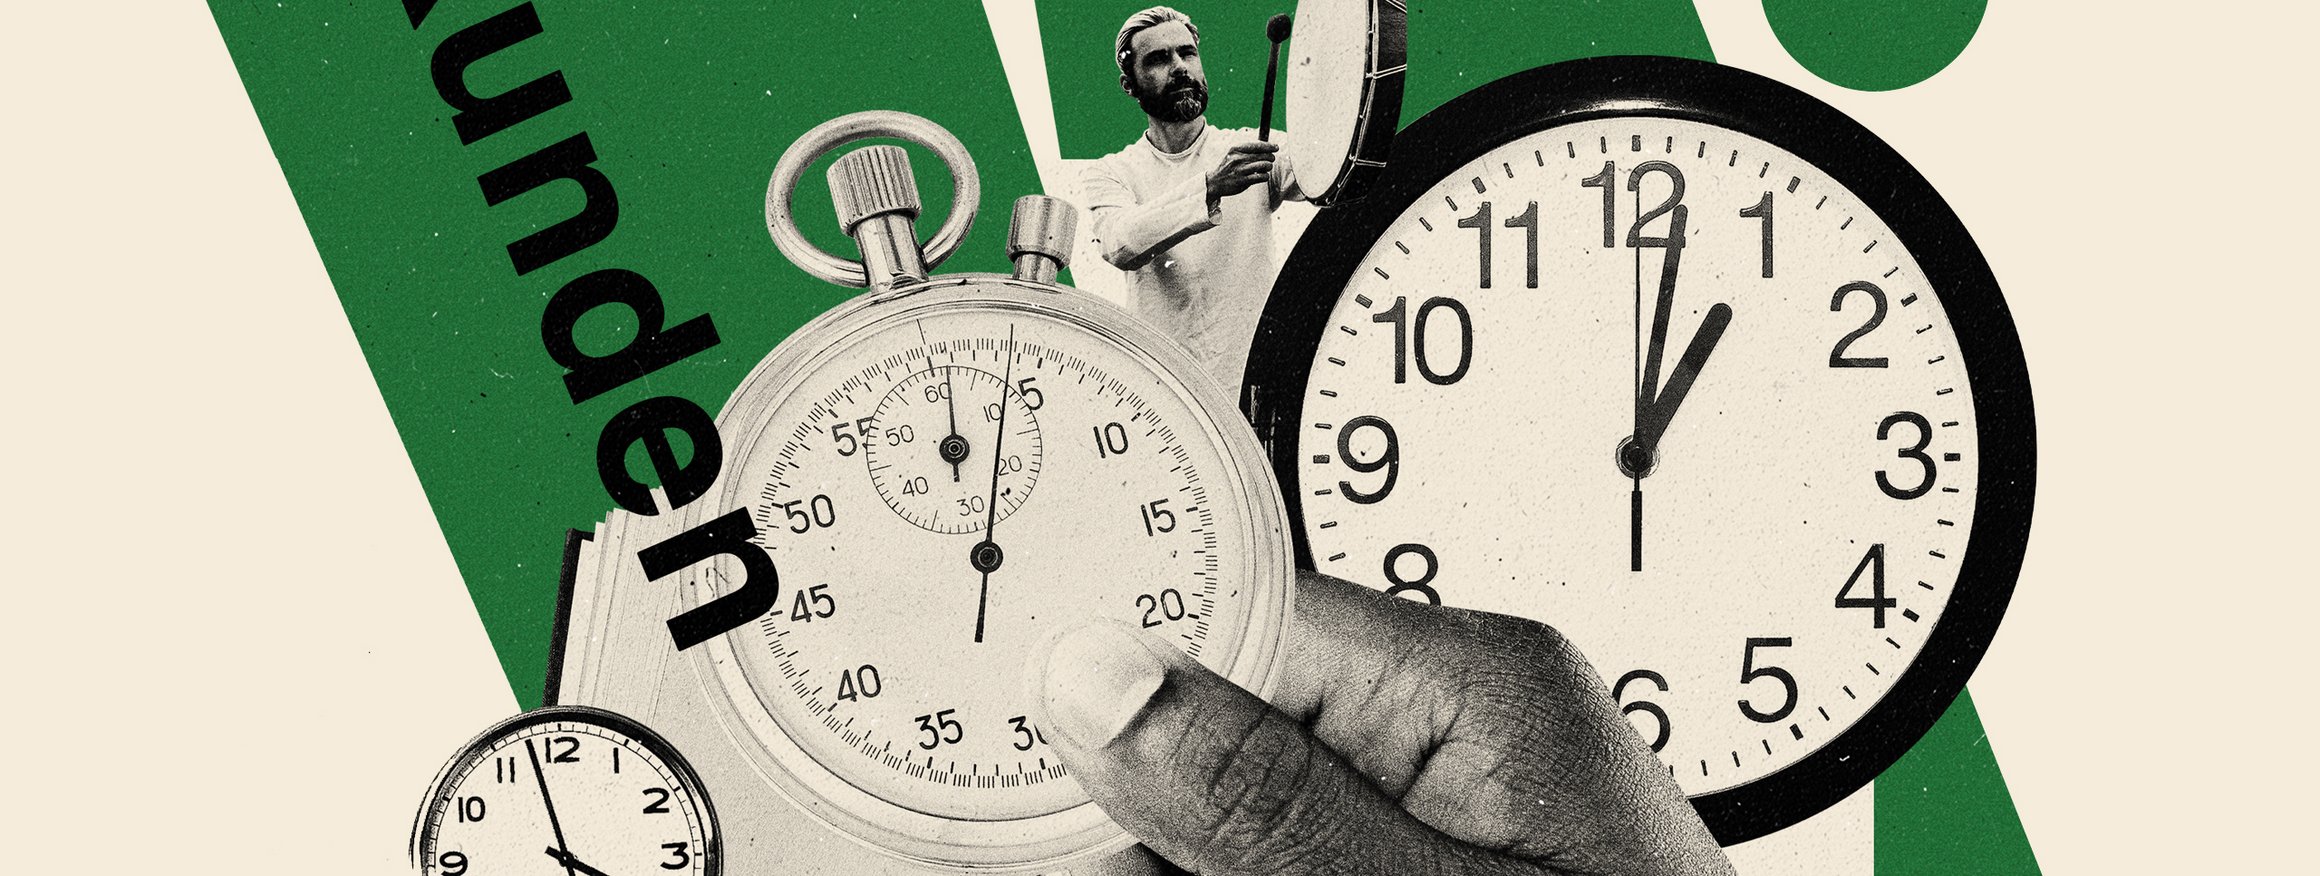 Die Illustration zeigt eine Hand mit einer Stopp-Uhr, daneben andere Uhren mit Sekundenzeigern, dahinter schlägt ein Mann mit altertümlichen Bart ein Schlaginstrument